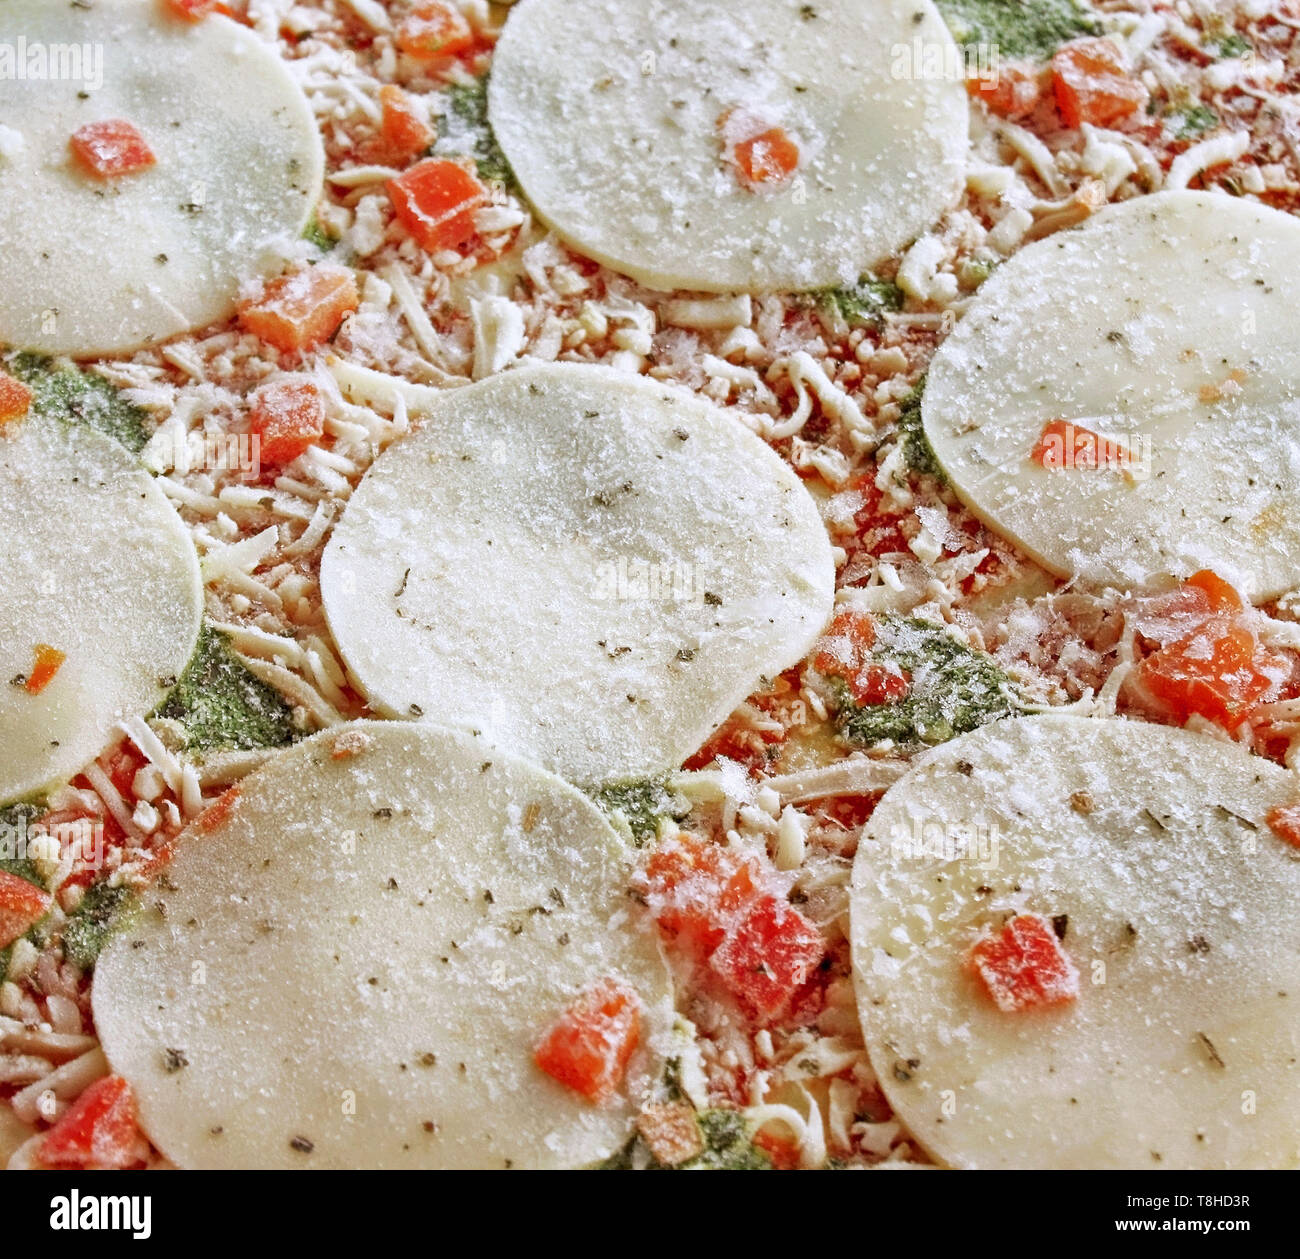 Nahaufnahme eines gefrorenen Mozzarella, Spinat und gewürfelte Tomaten pizza Stockfoto